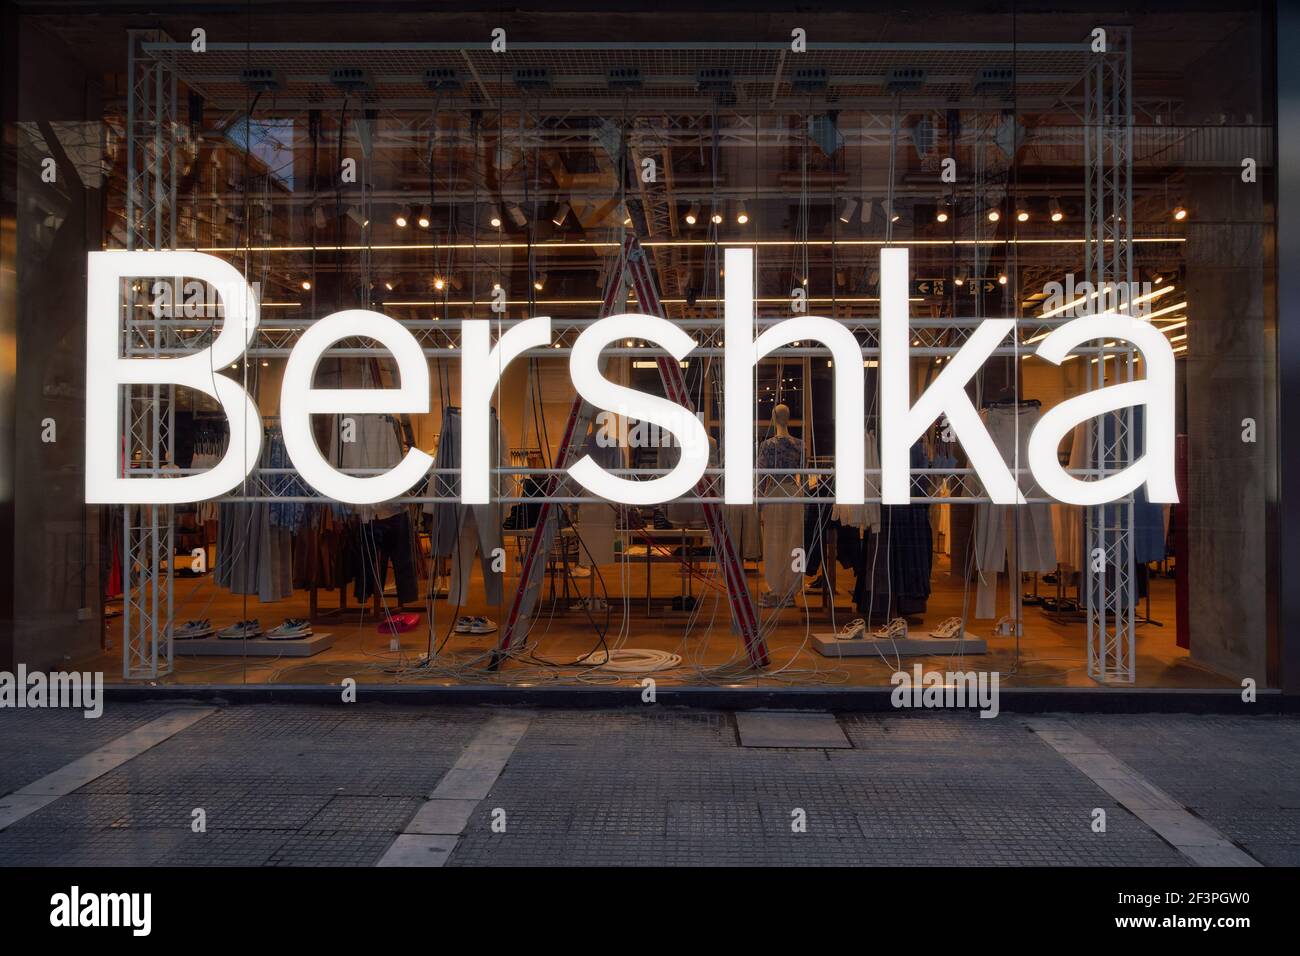 Bershka logo immagini e fotografie stock ad alta risoluzione - Alamy